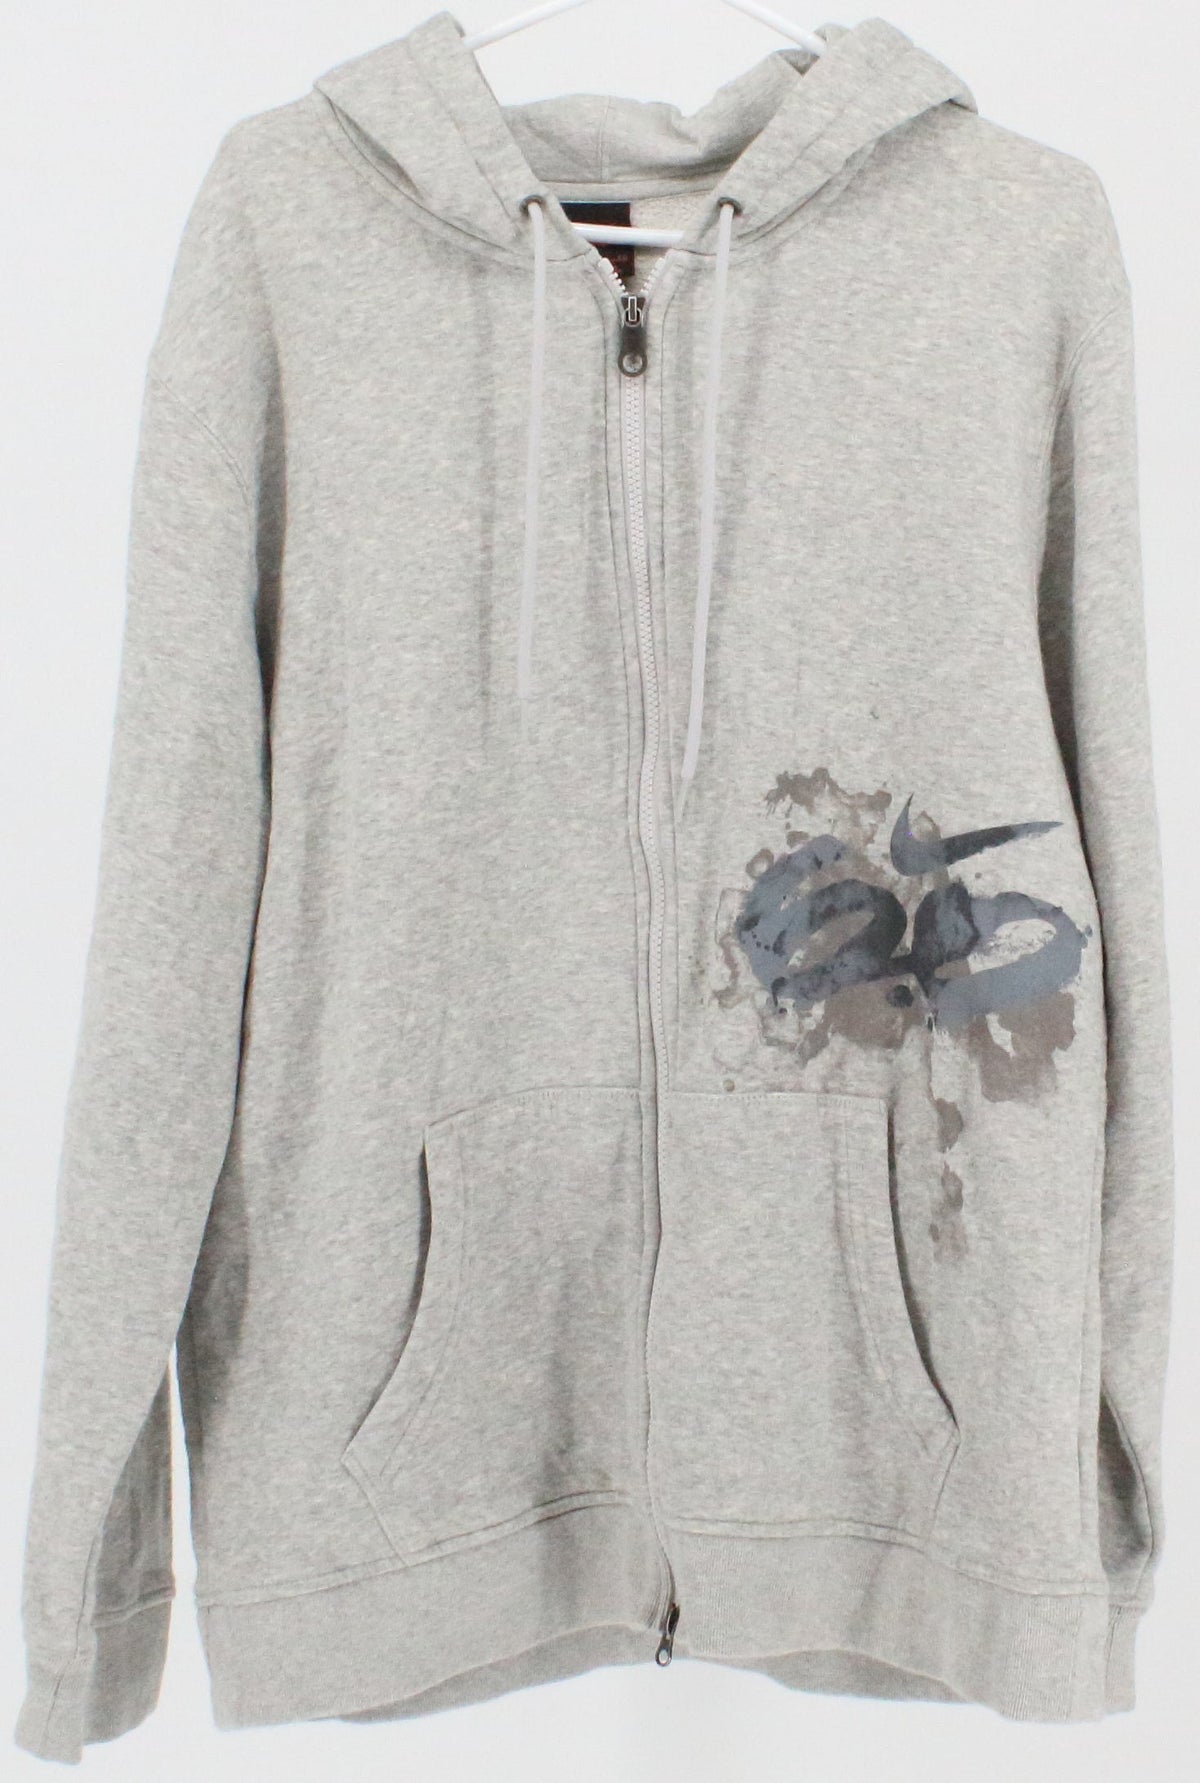 Nike 6.0 Grey Full Zip Front Print Hooded Sweatshirt